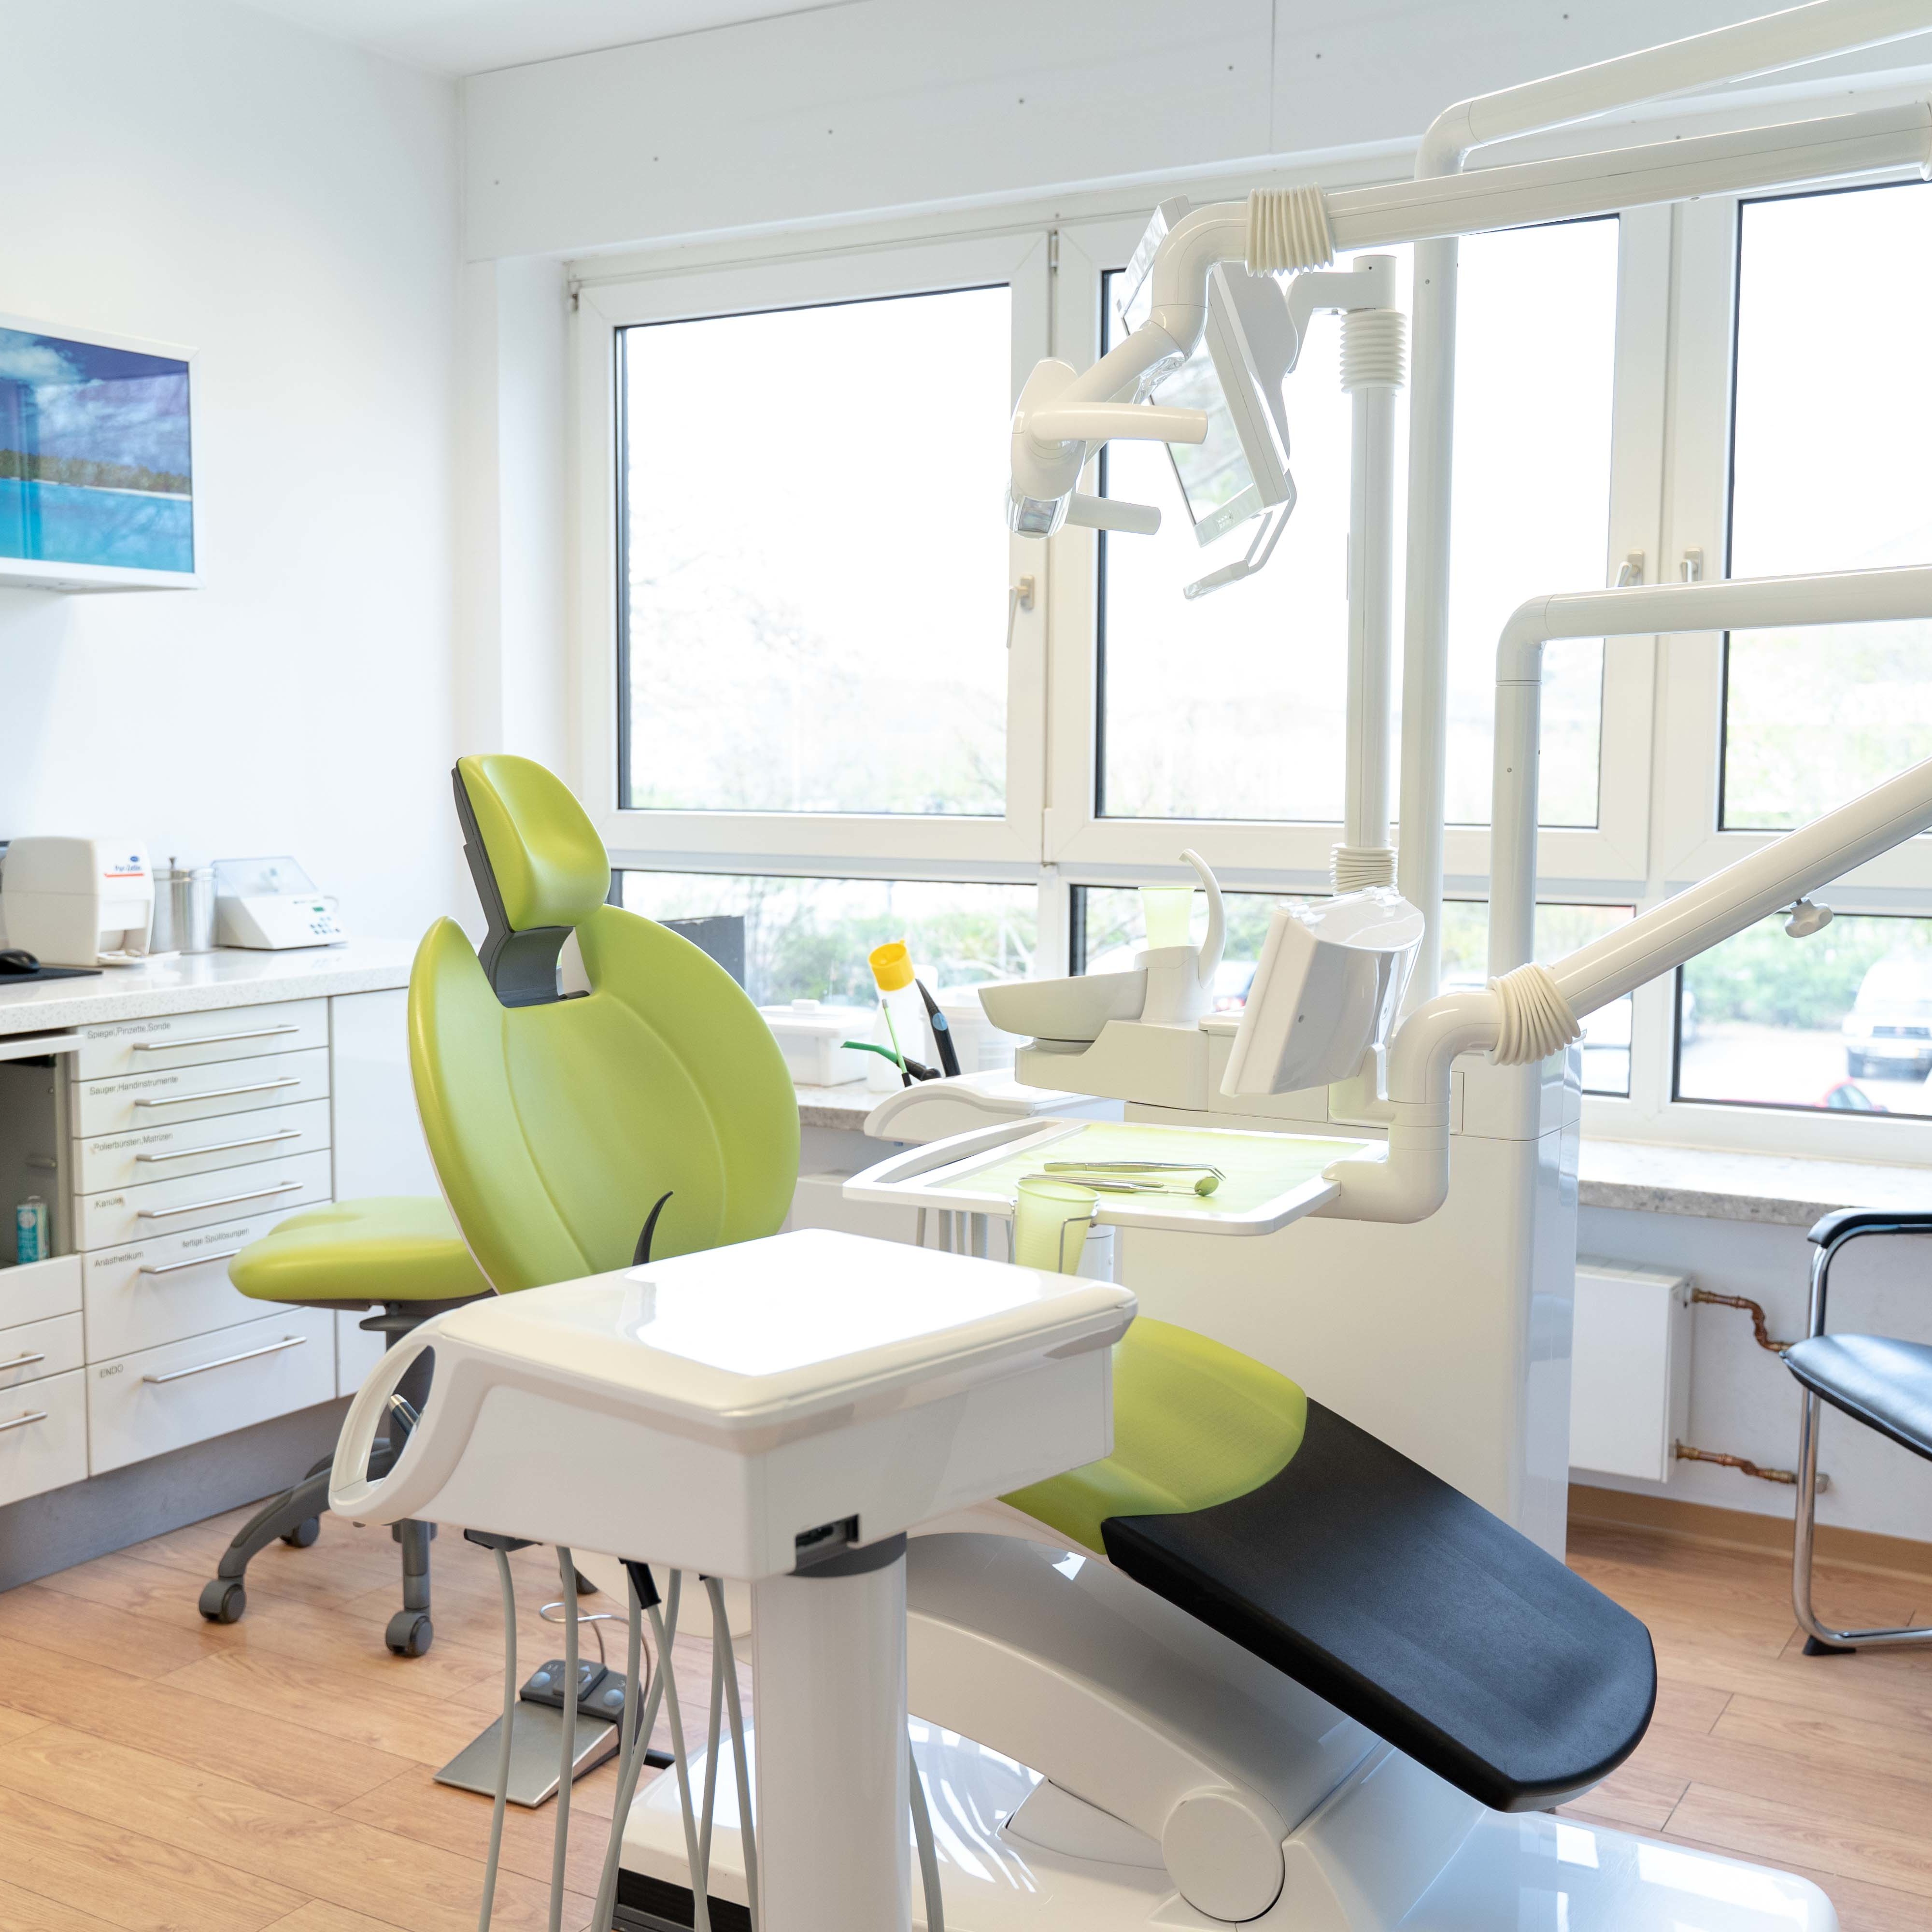 Zahnarzt Rüsselsheim Dr. Dieudonné Behandlungsraum